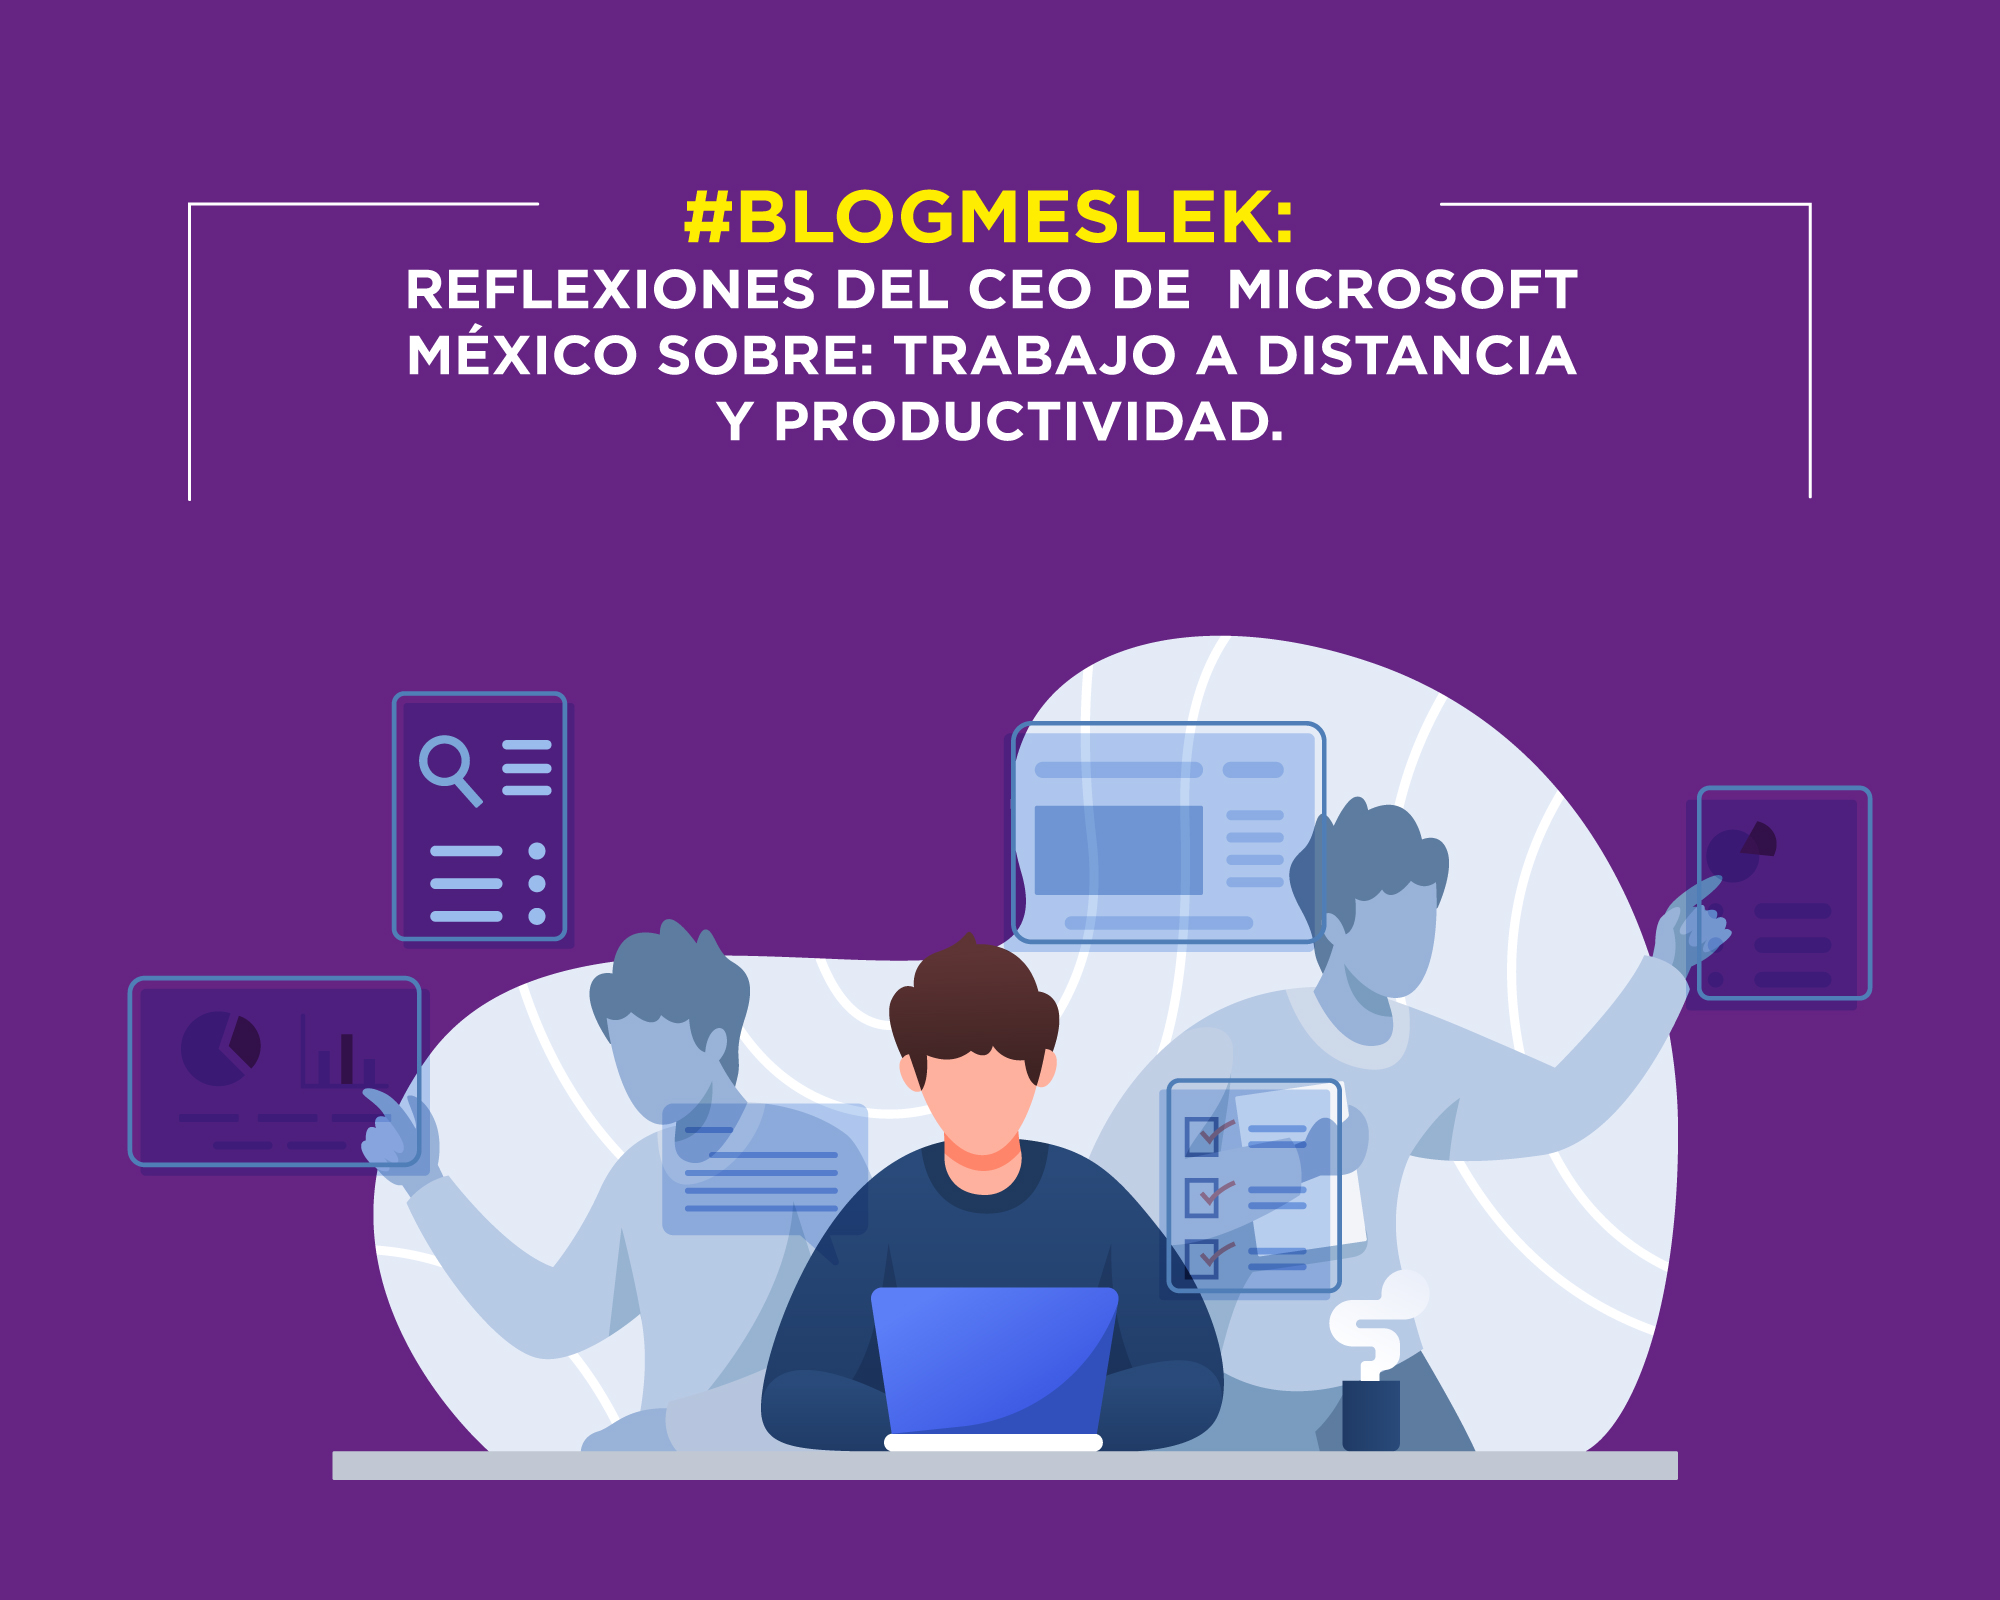 #MartesDeBlog: Reflexiones del CEO de Microsoft México sobre: Trabajo a distancia y productividad.